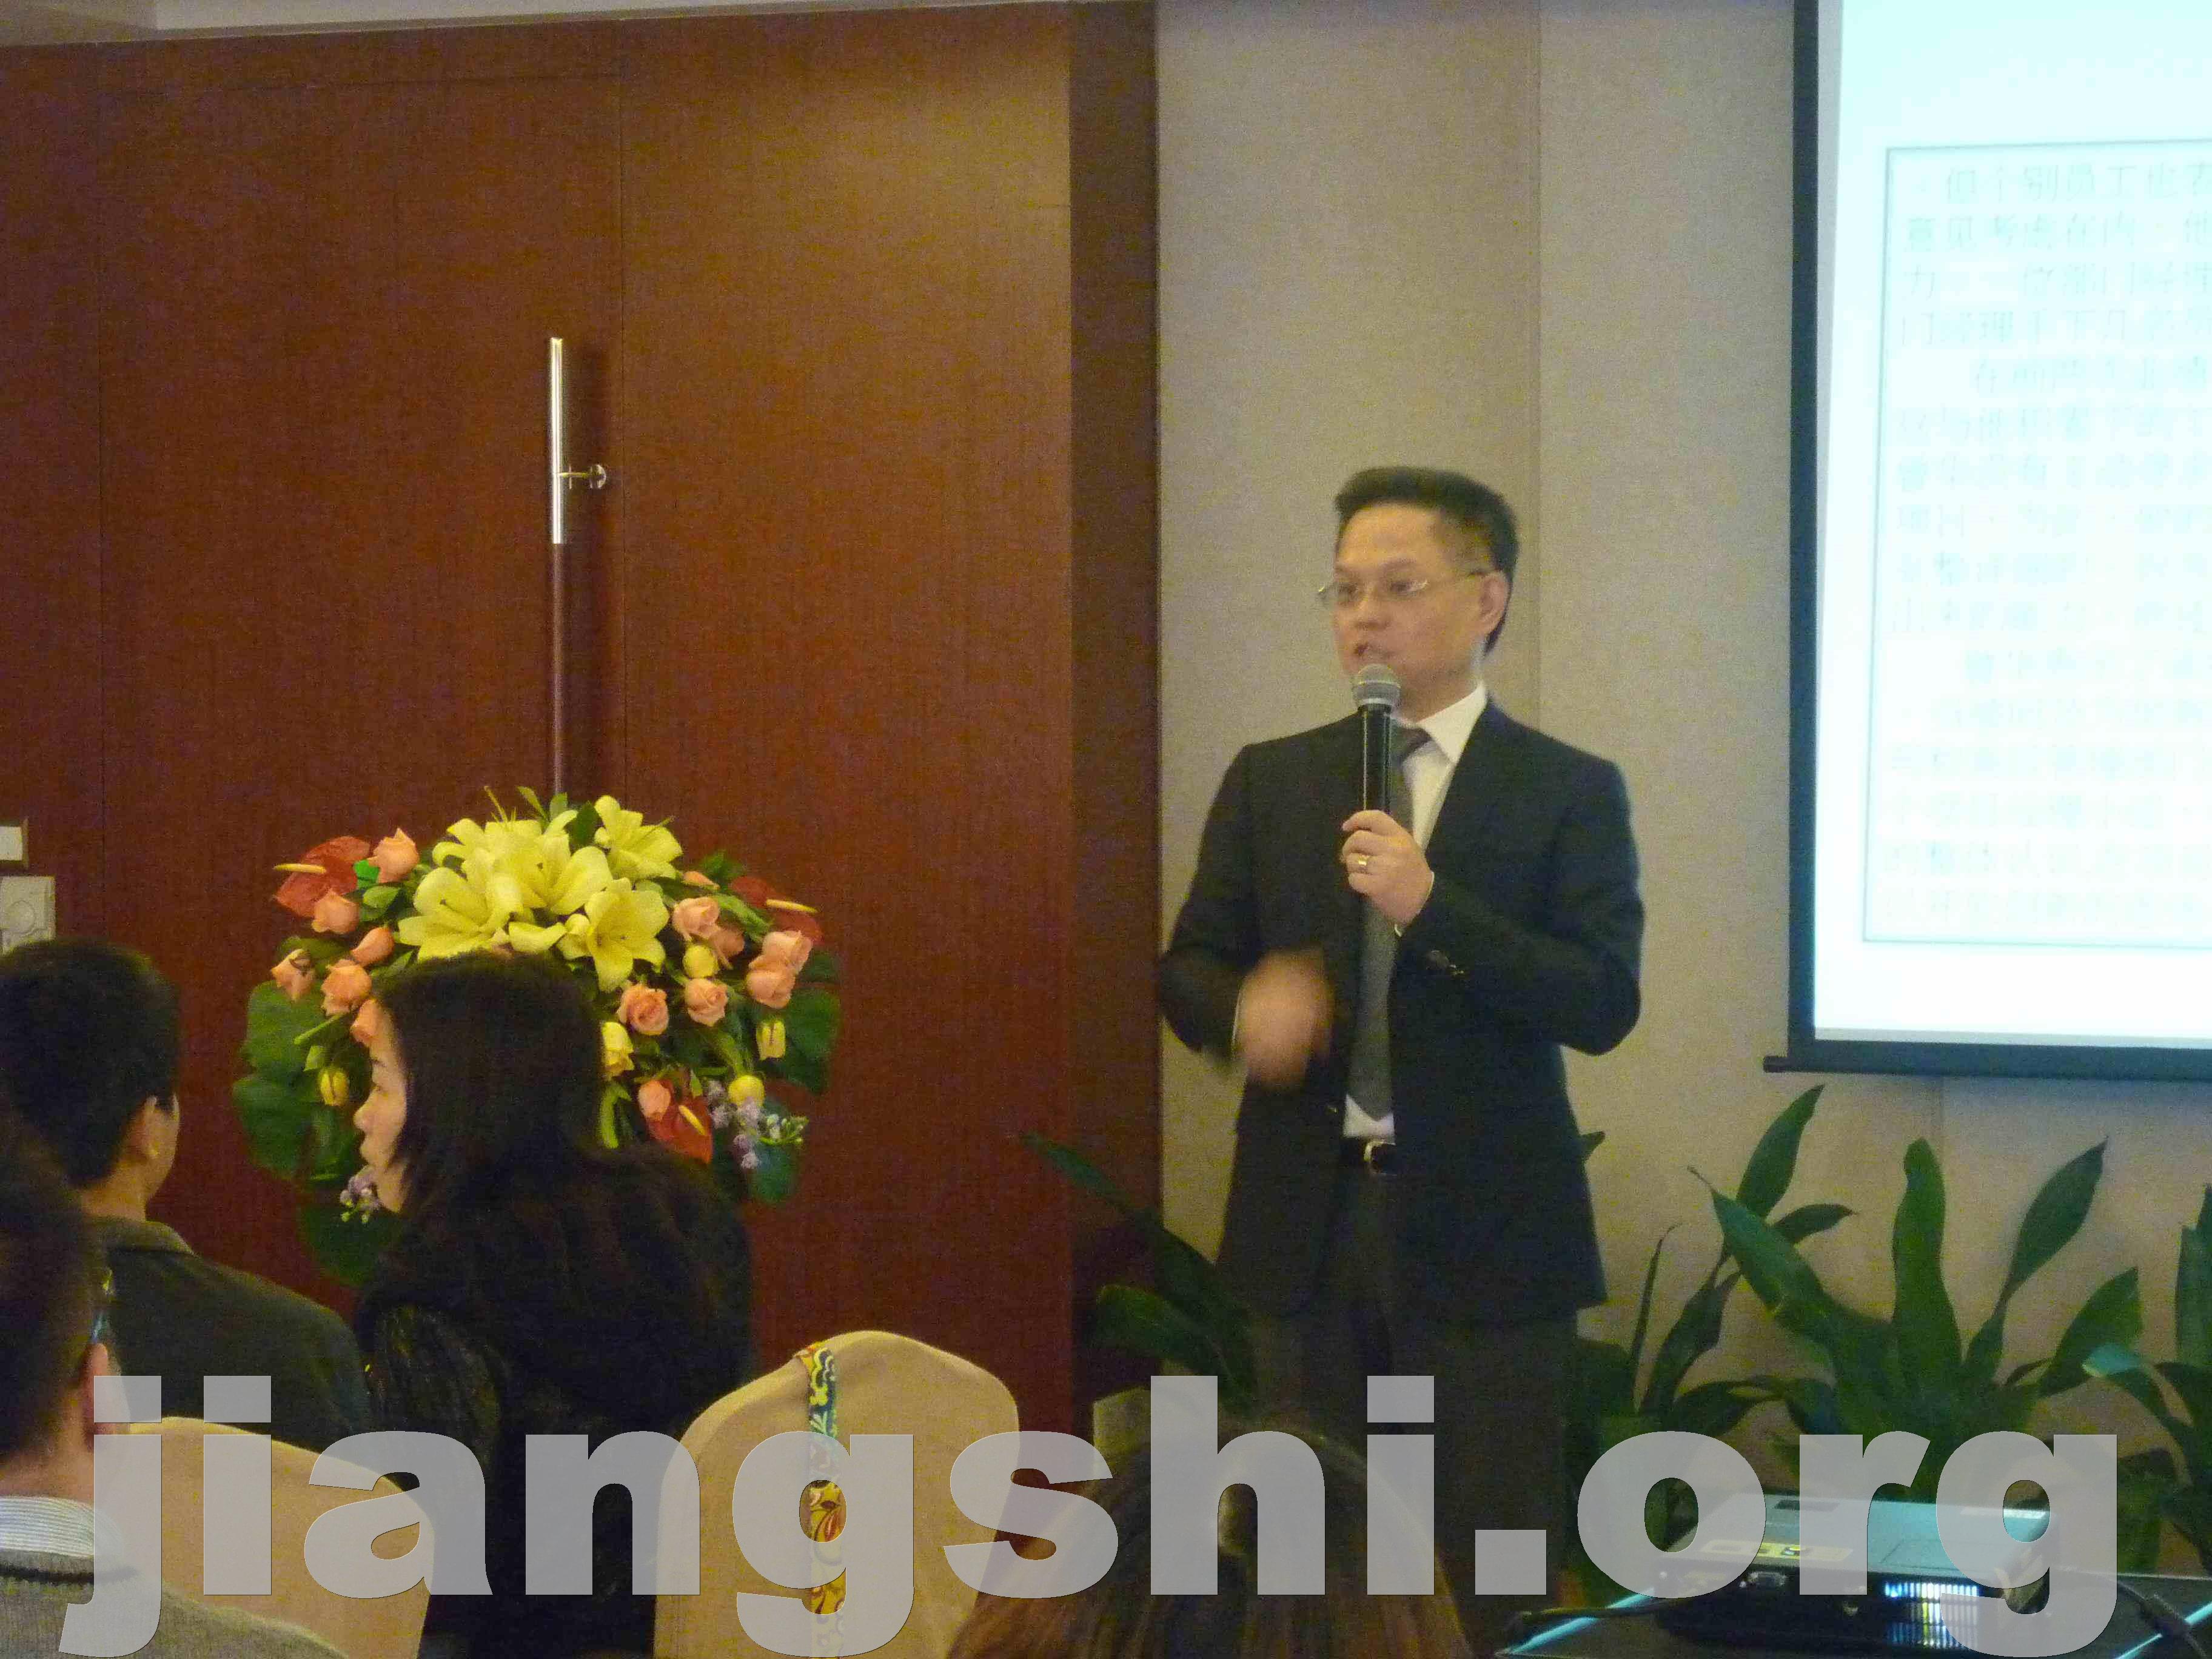 刘成熙老师台湾著名管理培训专家高效执行力打造卓越企业